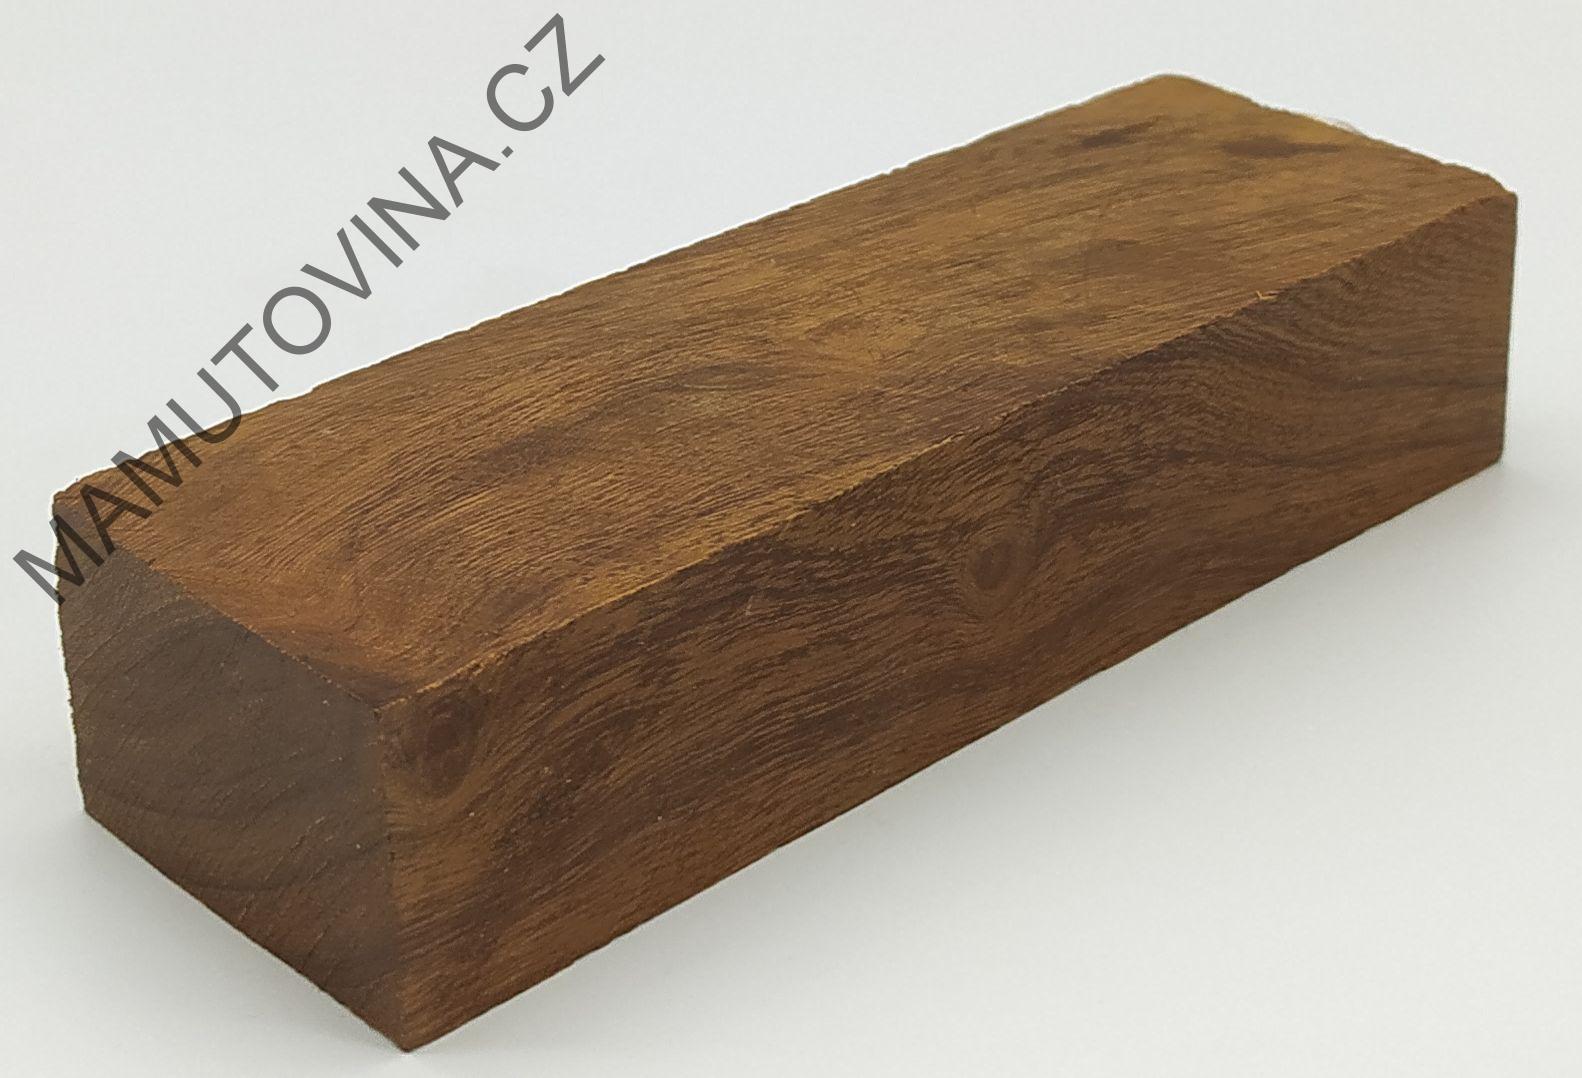 Ironwood 133 x 43 x 28 mm